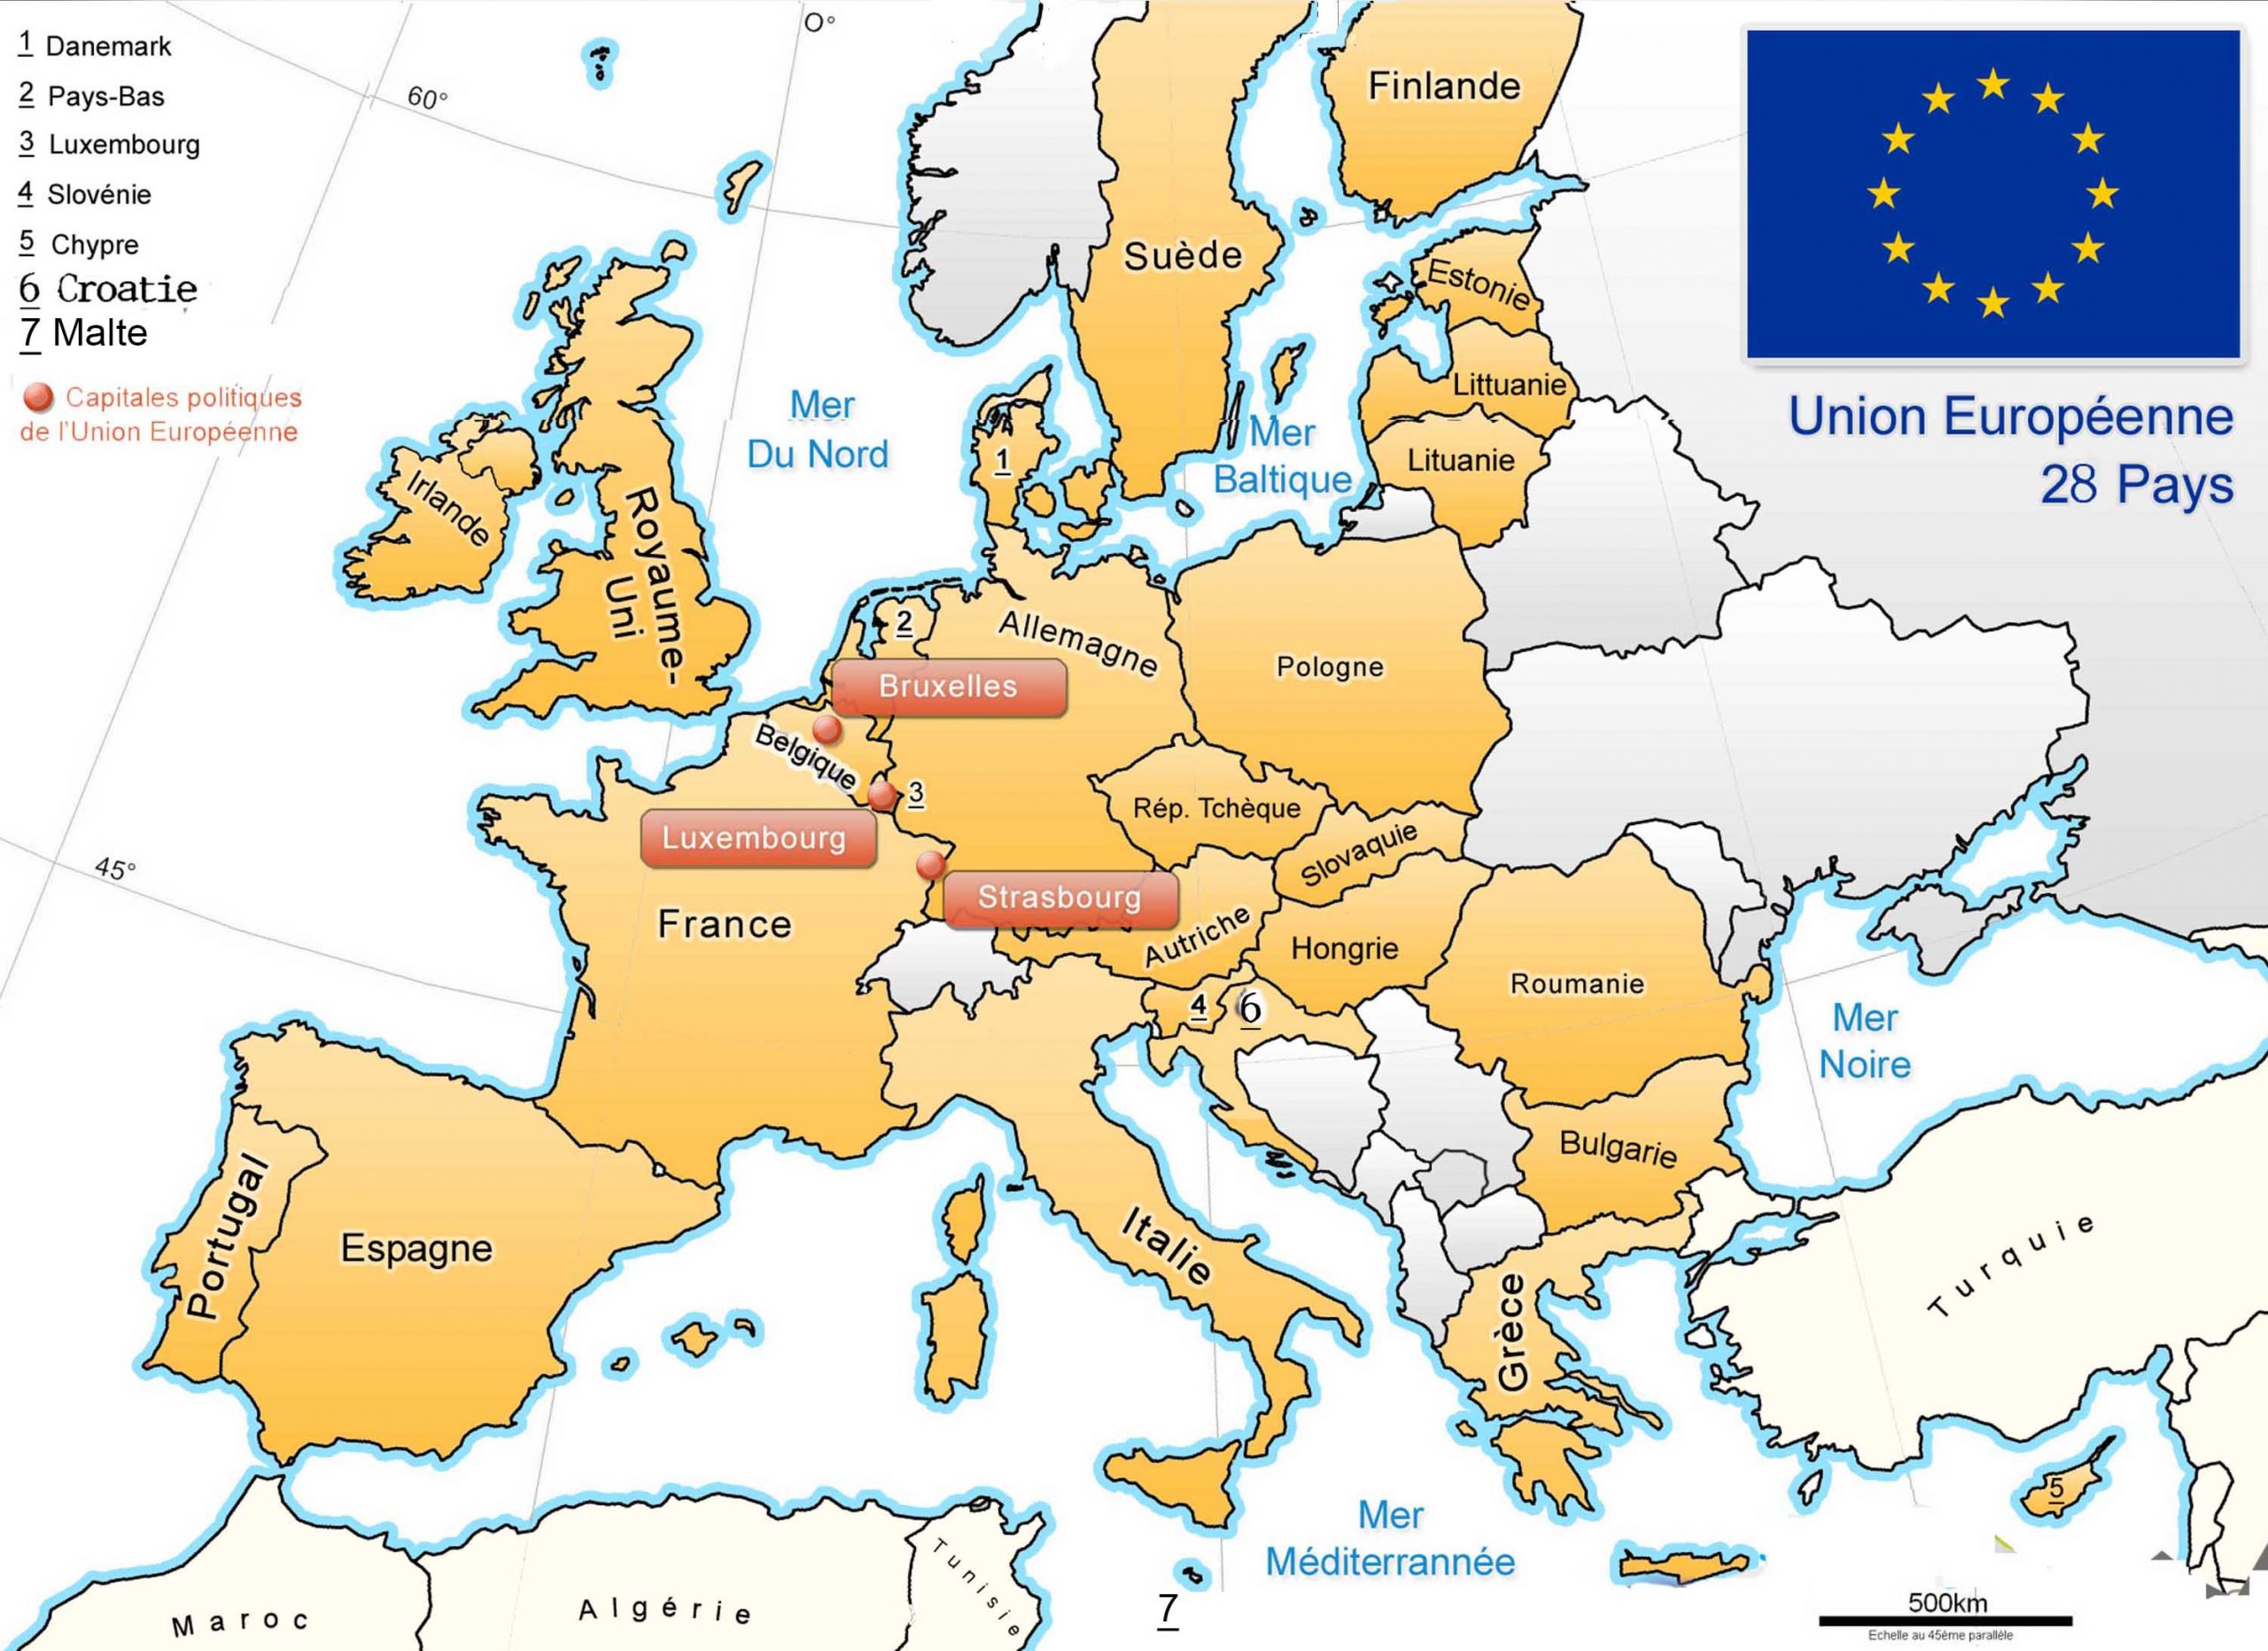 Apprendre À Placer Les Pays De L' Union Européenne - Le Blog tout Pays D Europe Jeux Gratuit